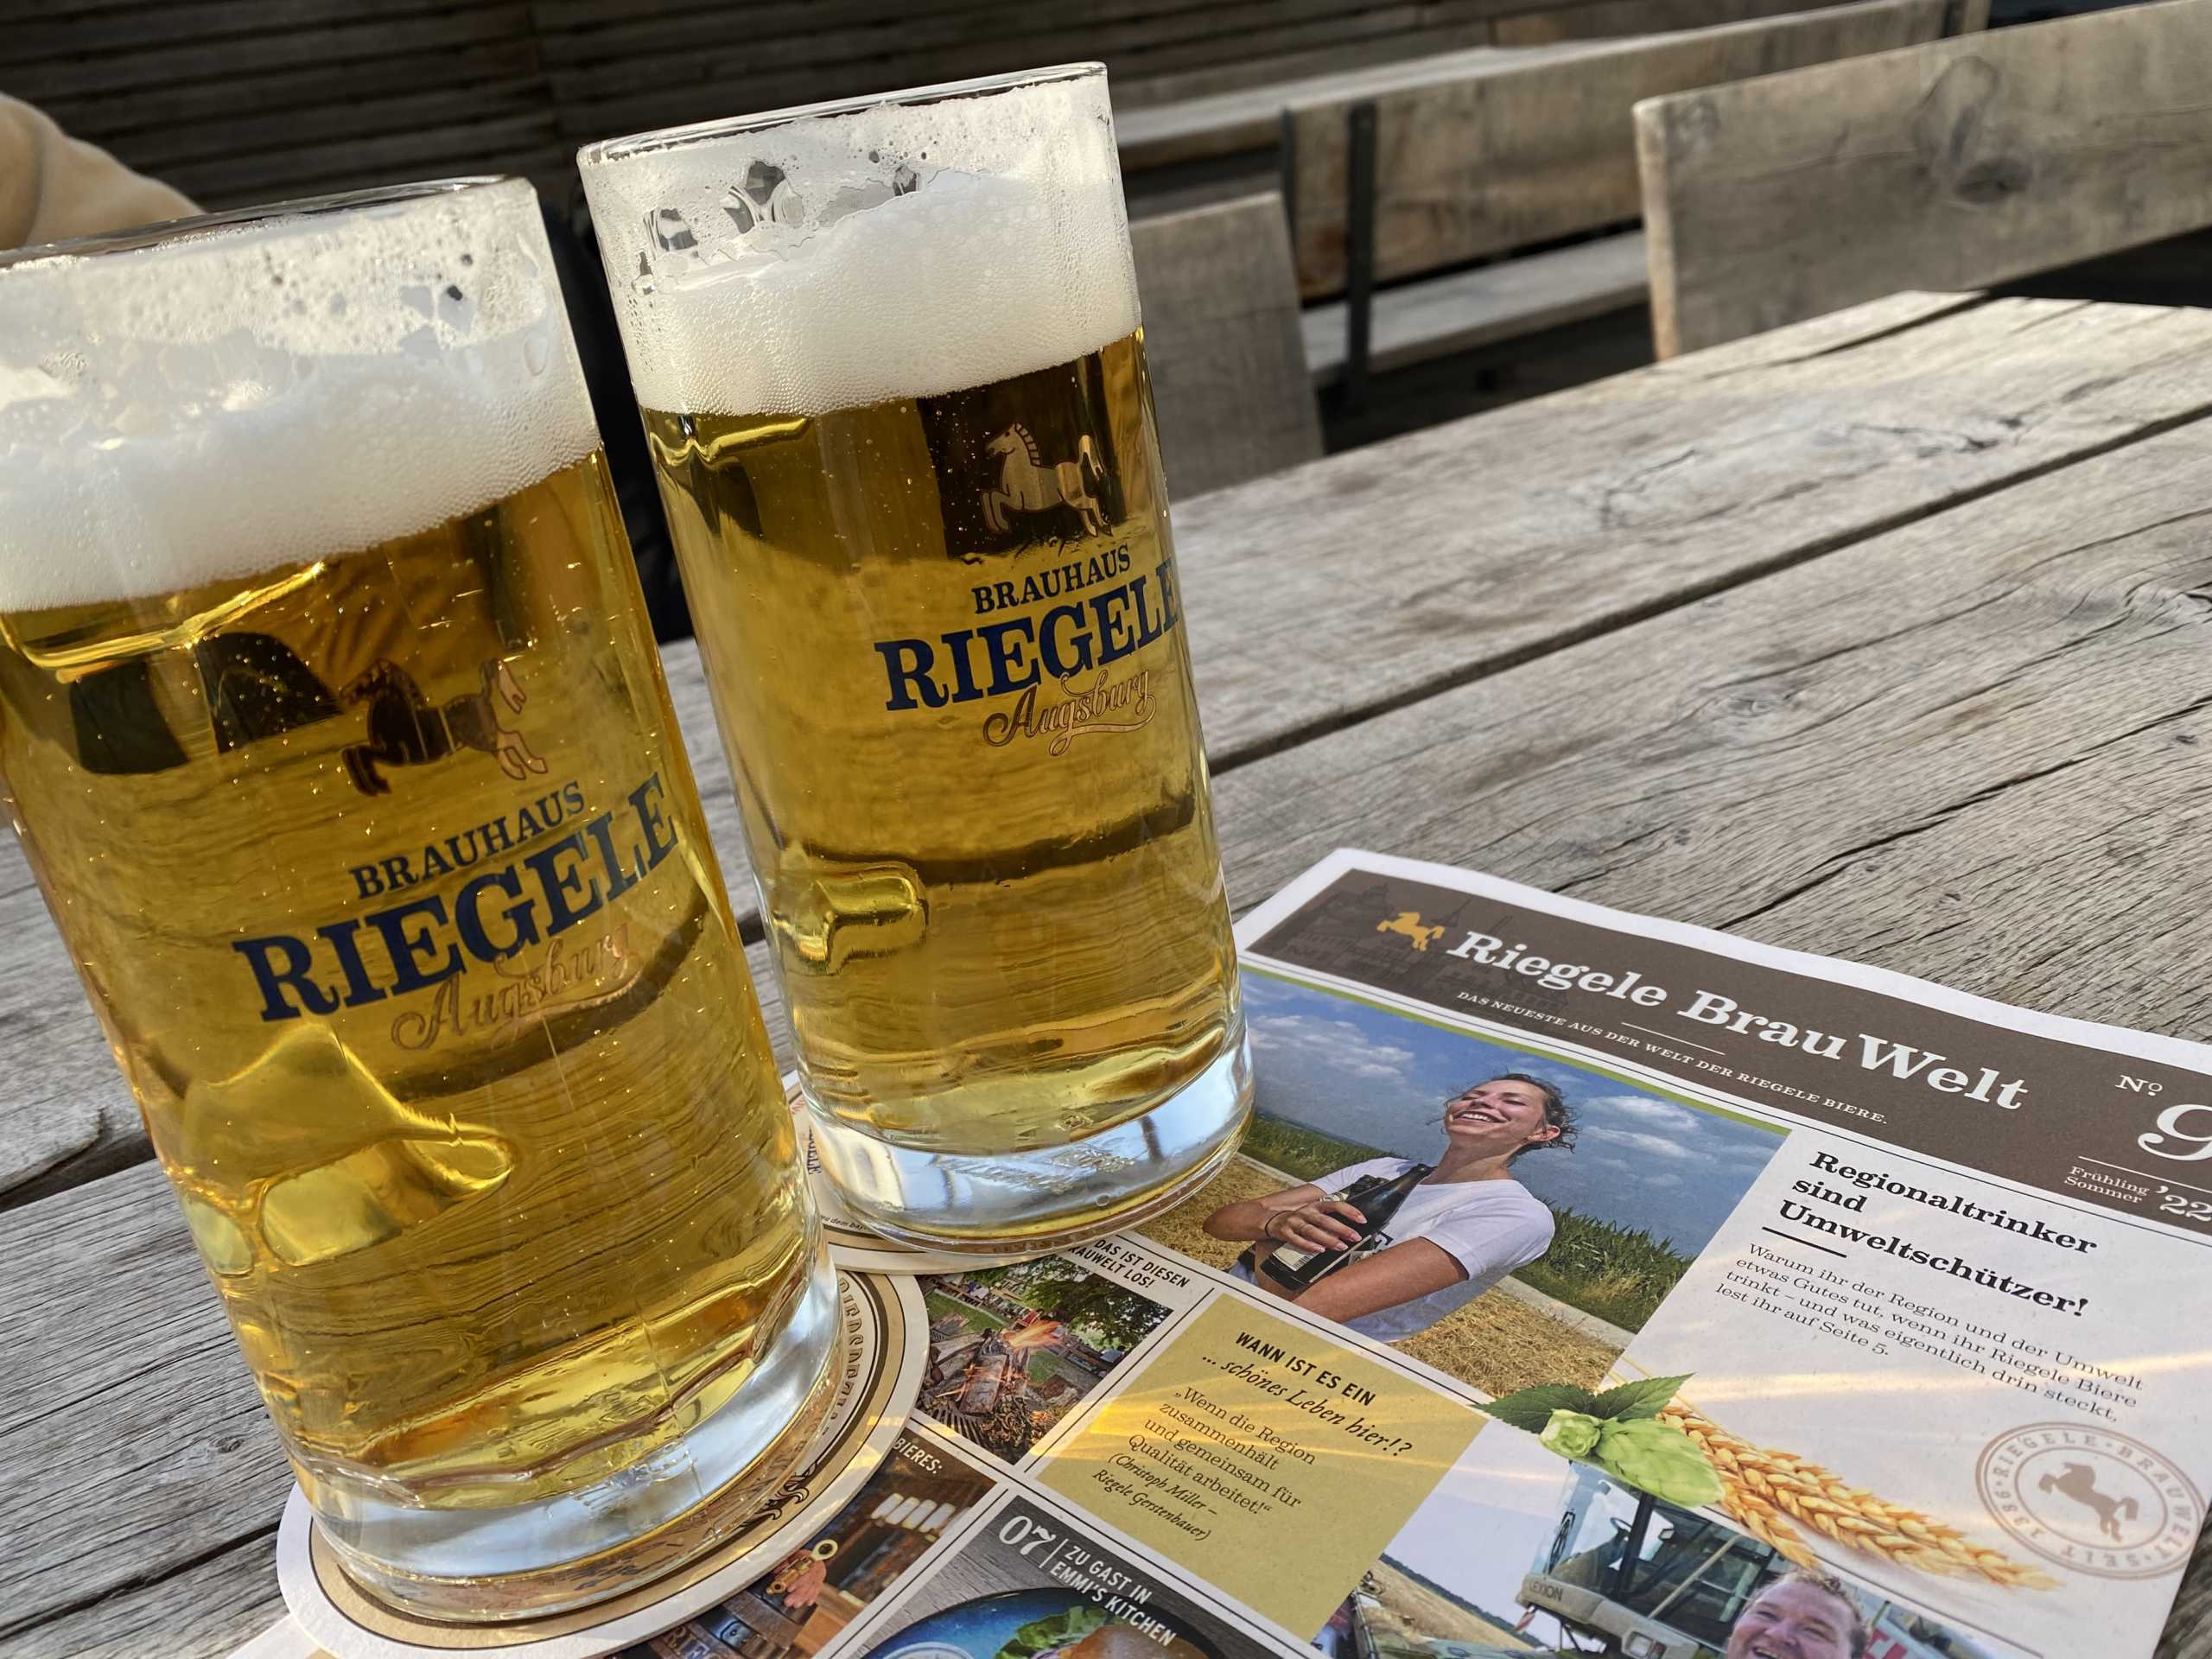 Nach dem Tag des Bieres saßen wir noch im Riegele Wirtshaus auf dem Sonnendeck | Johannes Ulrich Gehrke